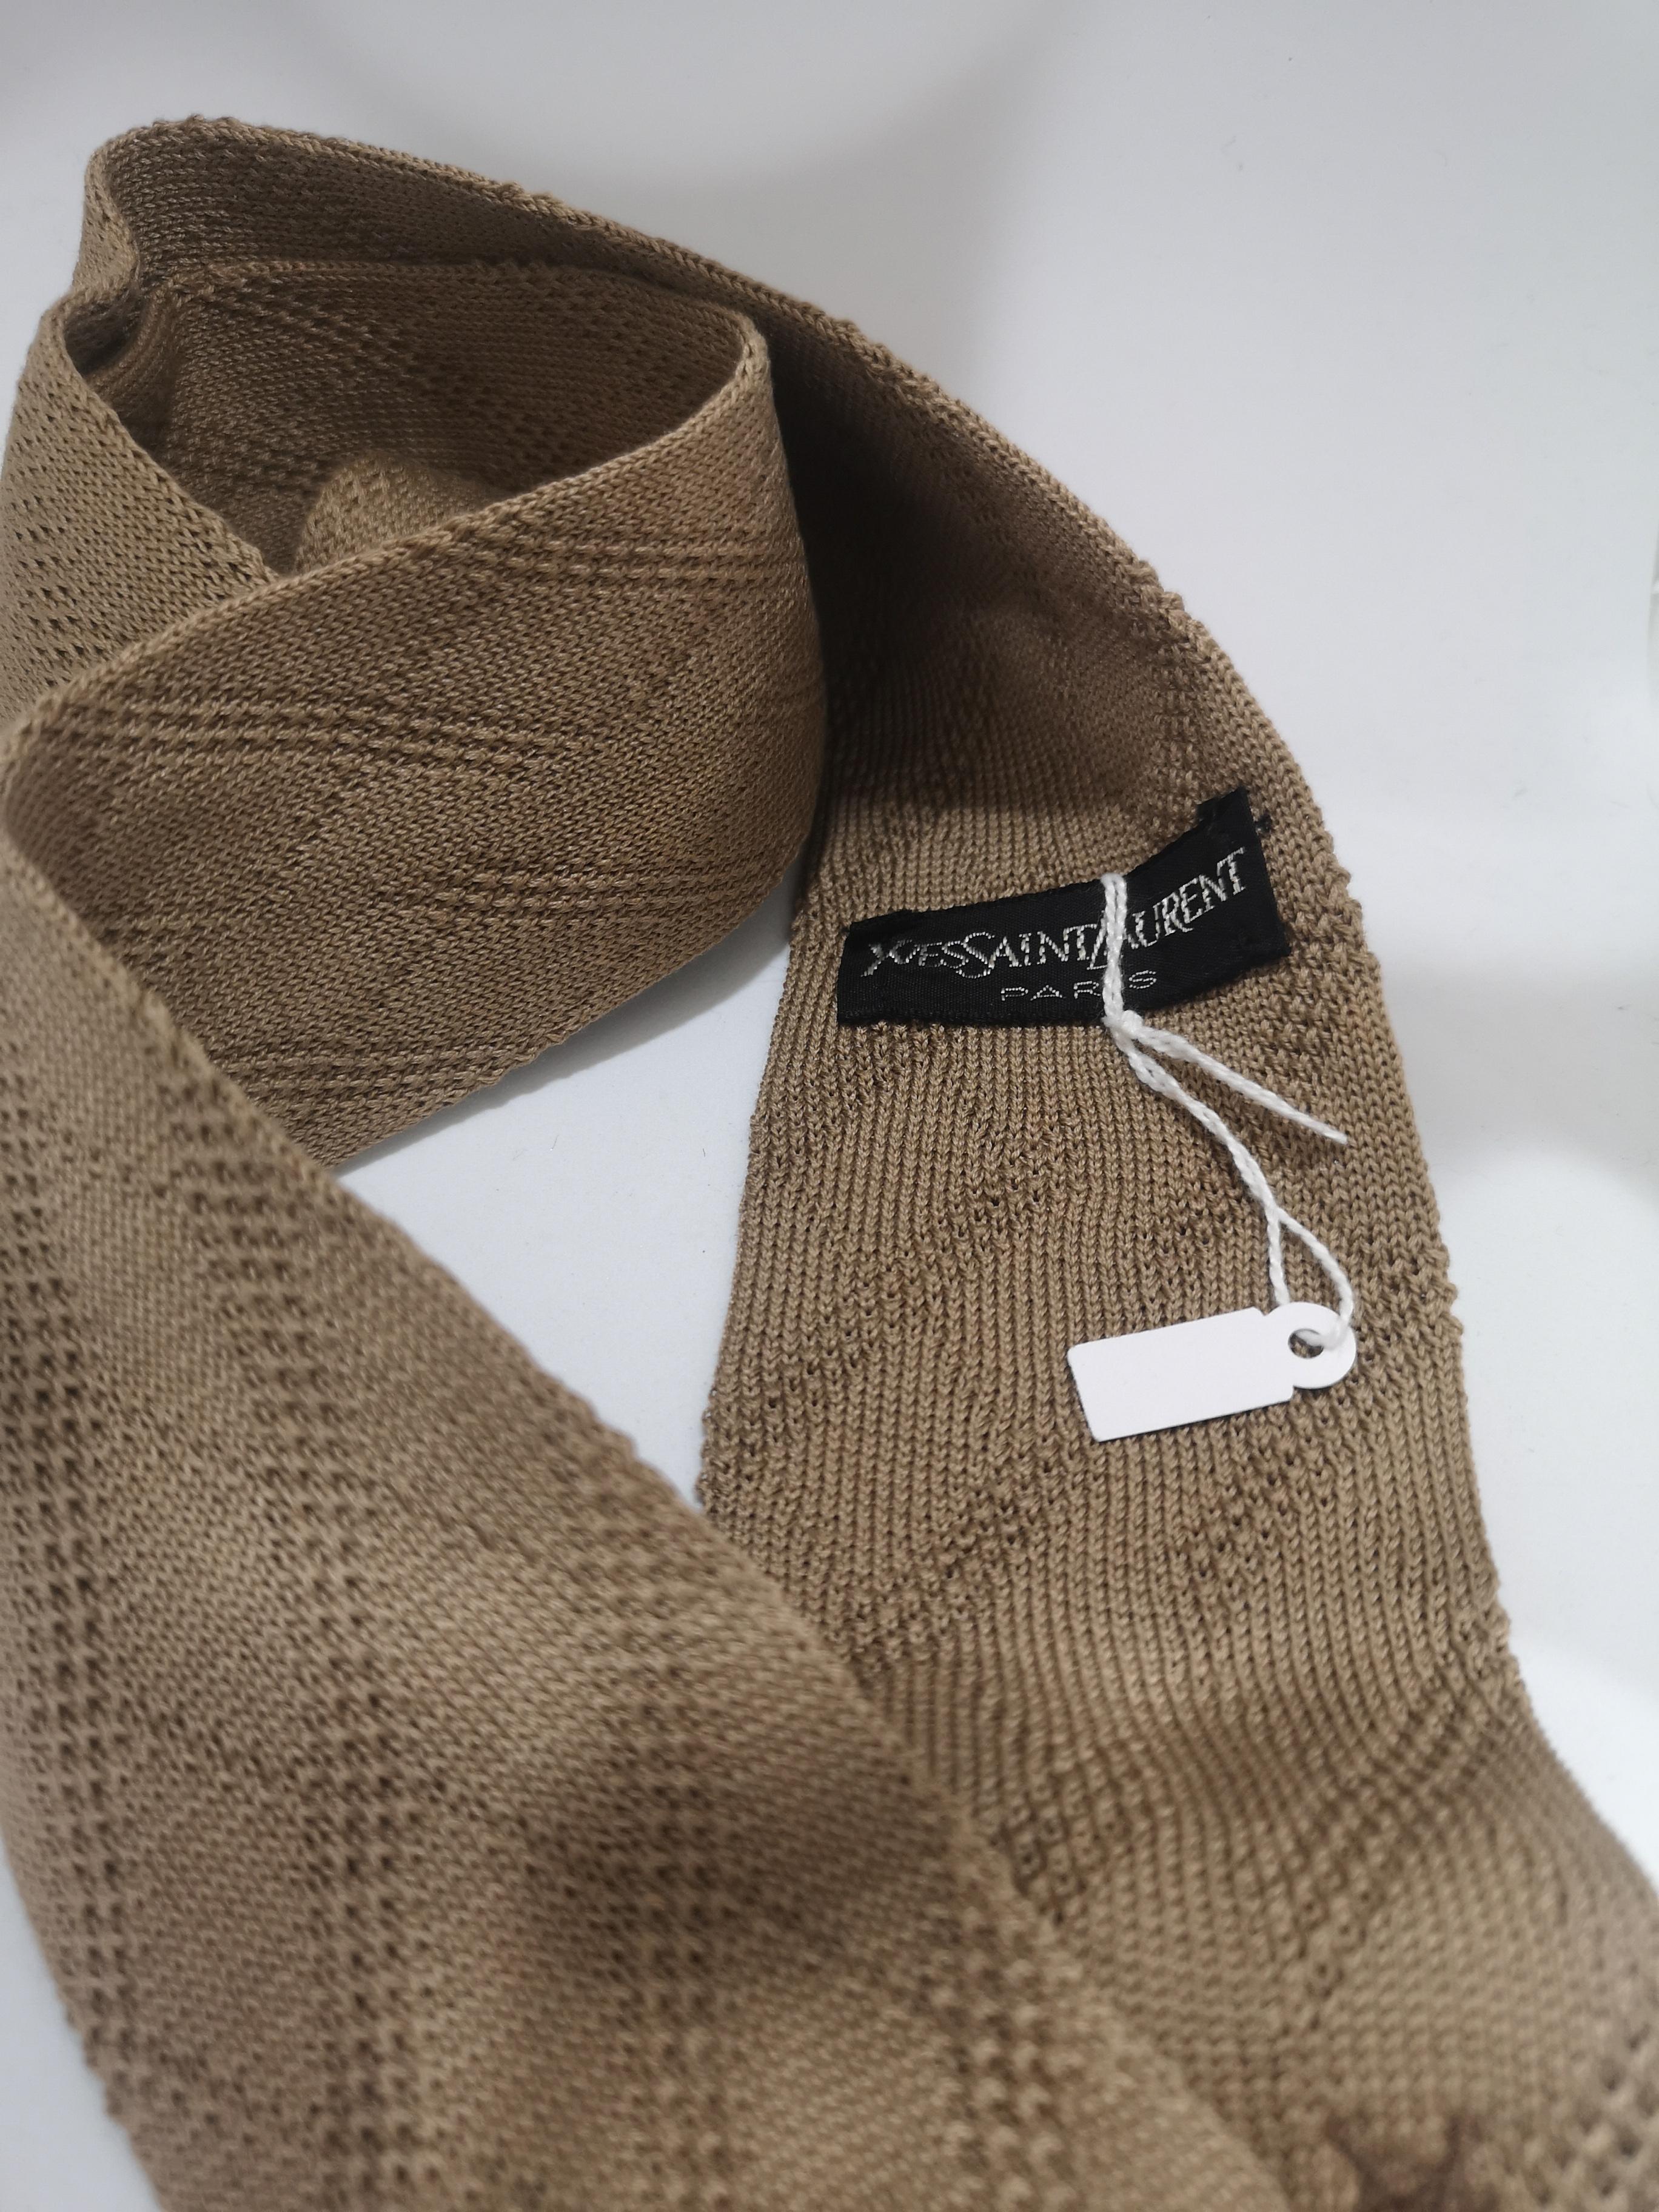 Women's or Men's Yves Saint Laurent wool beige tie